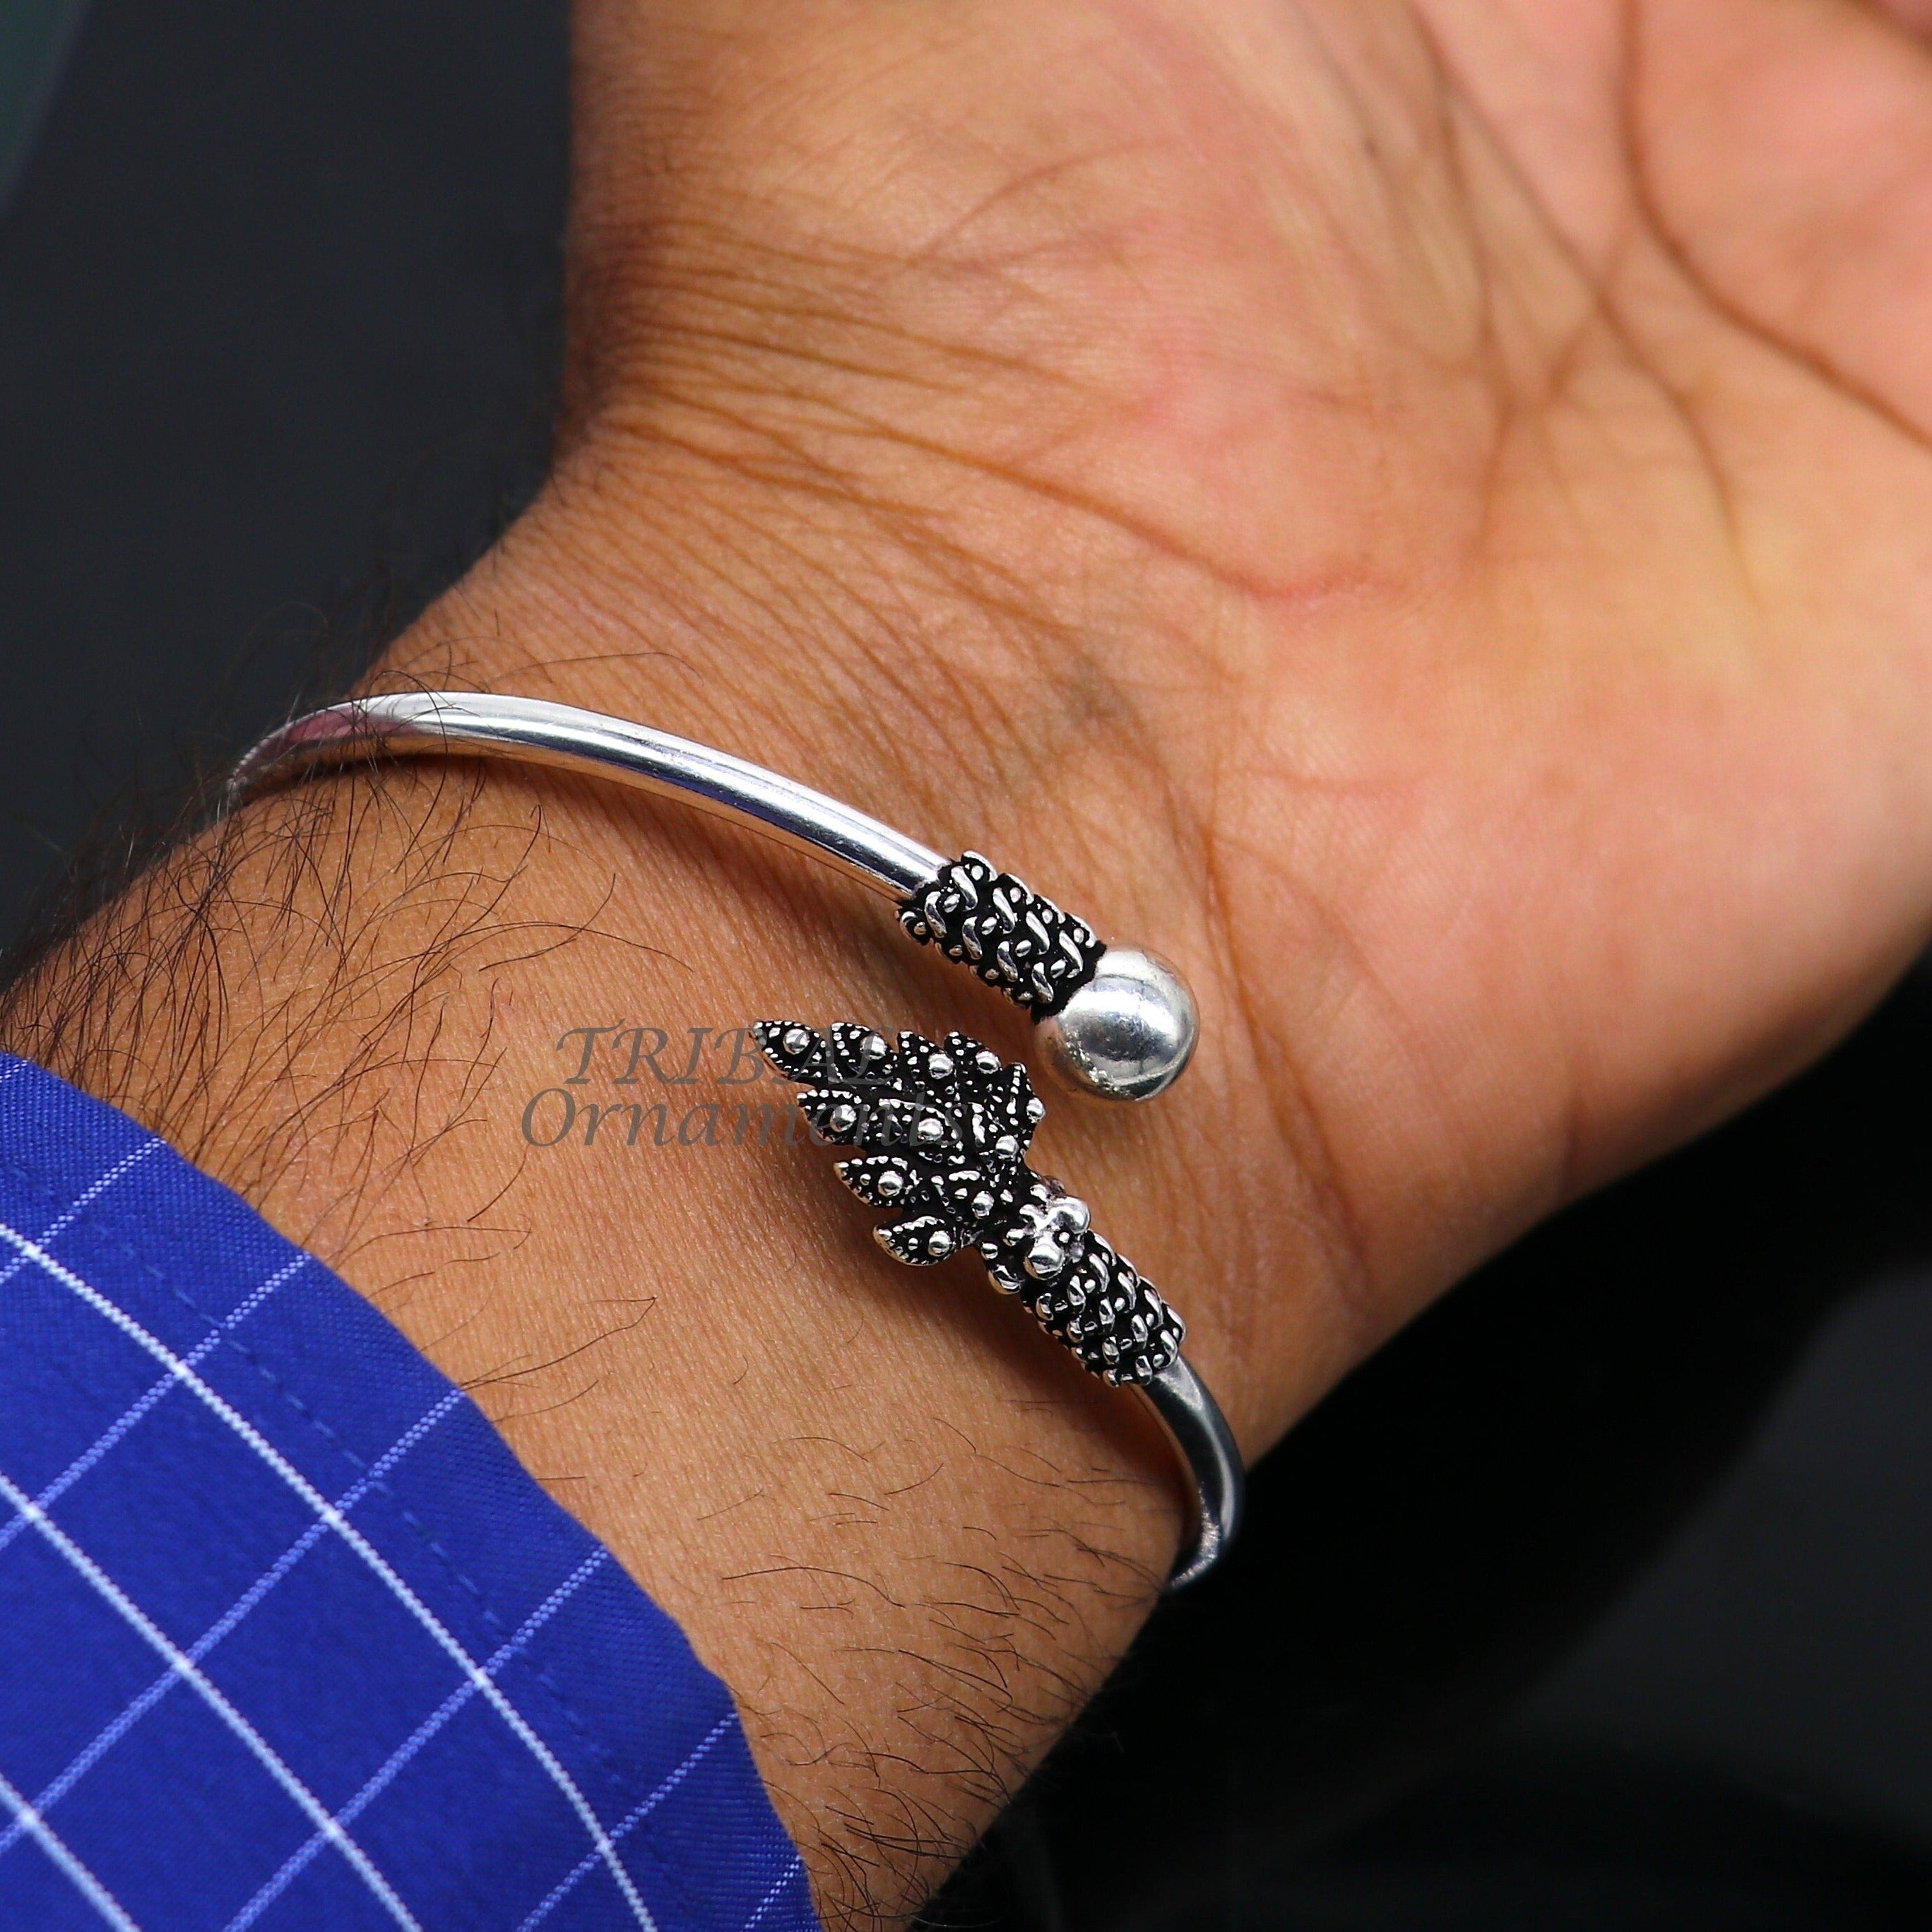 Bangles|silver Butterfly Charm Bracelet - Tassel Chain Bangle For Women